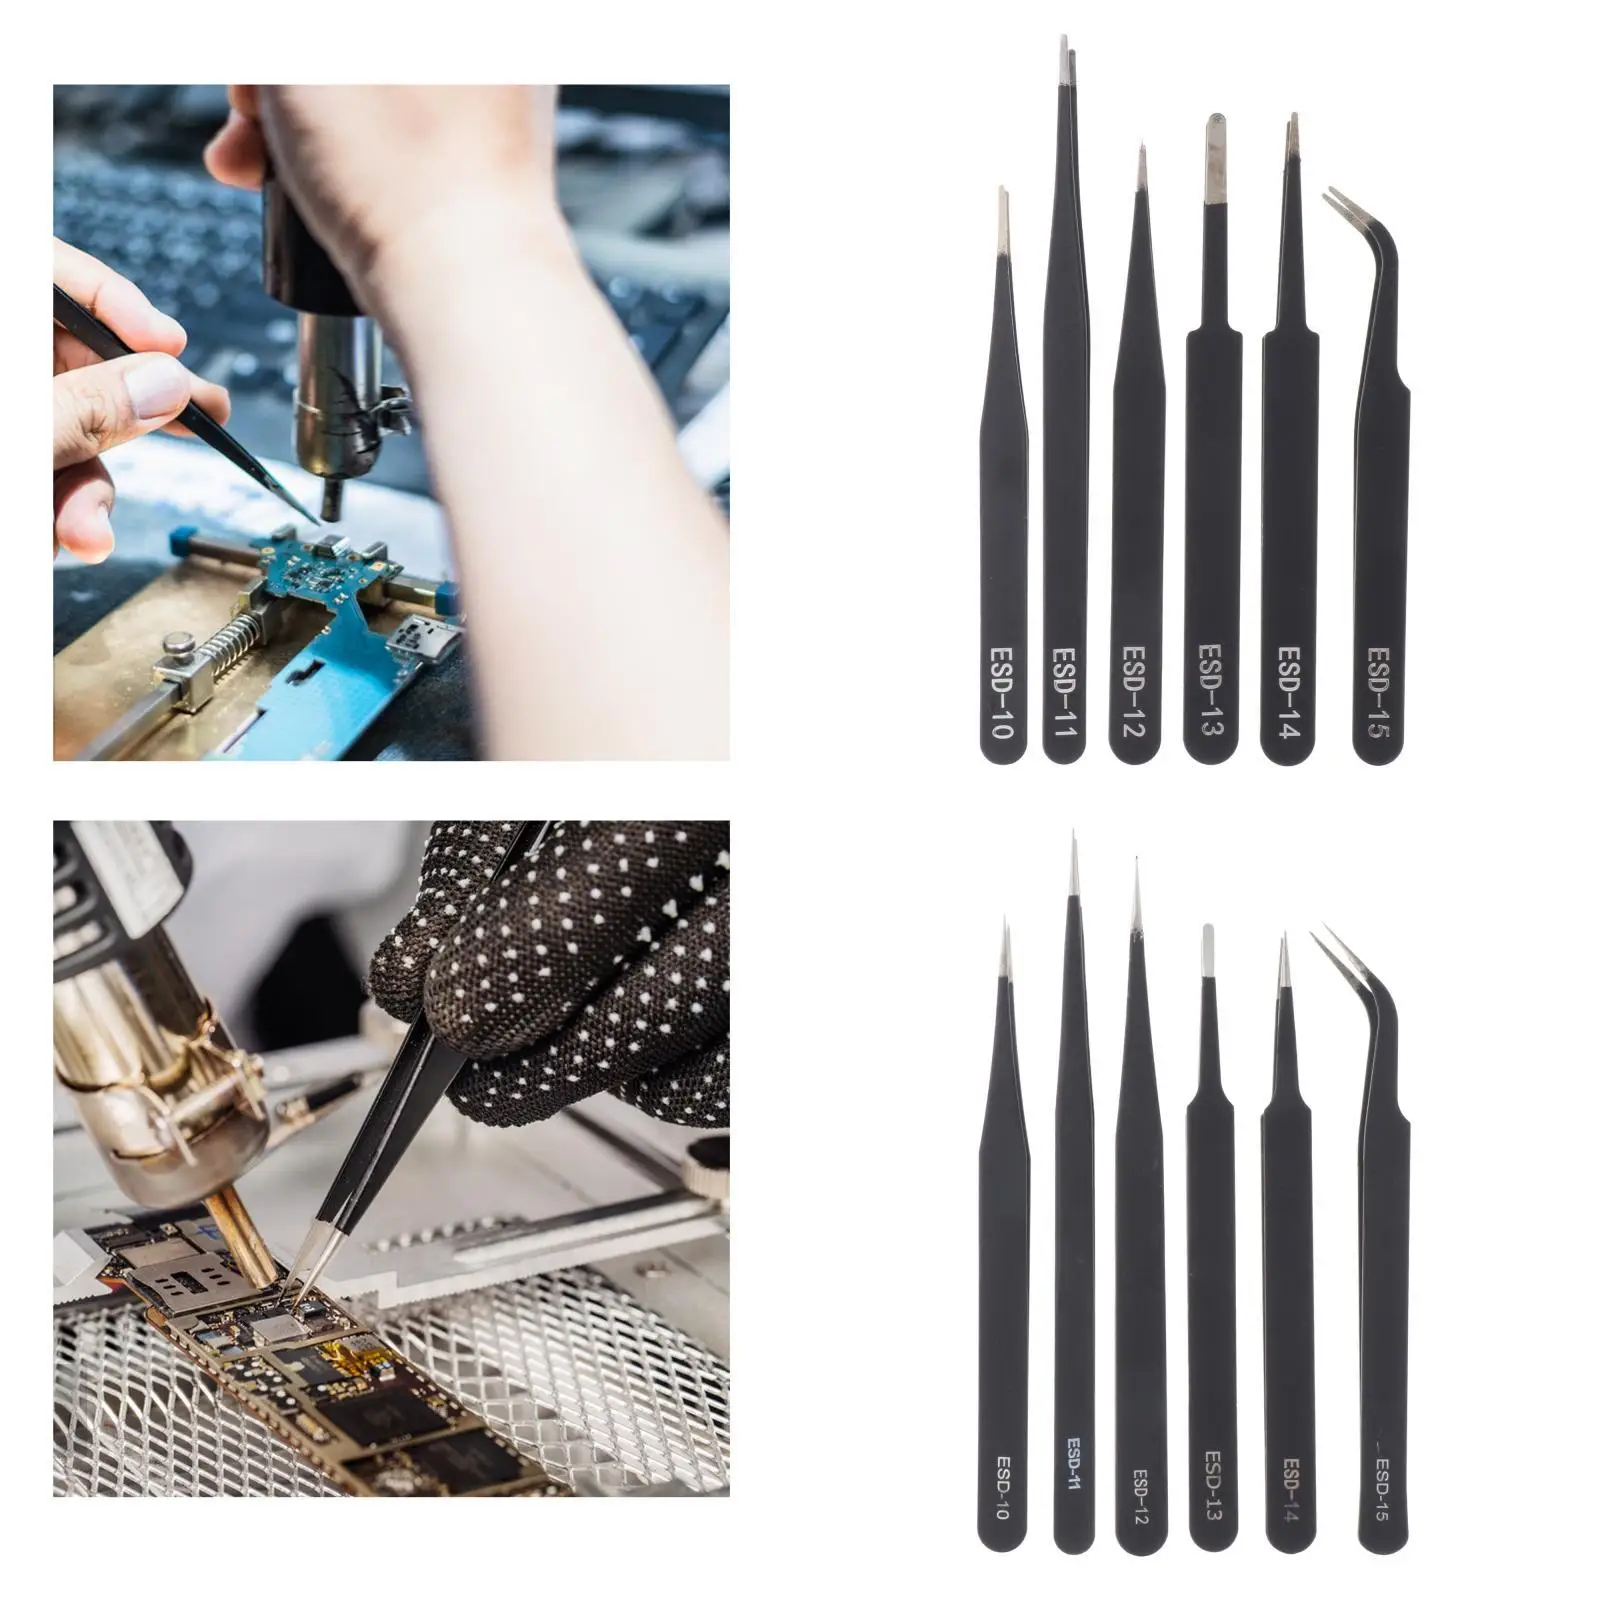 6 Pieces Industrial Soldering Tweezers Electronic Repair Tool Decal Decor Picker Tools Precision Tweezers Set for Soldering